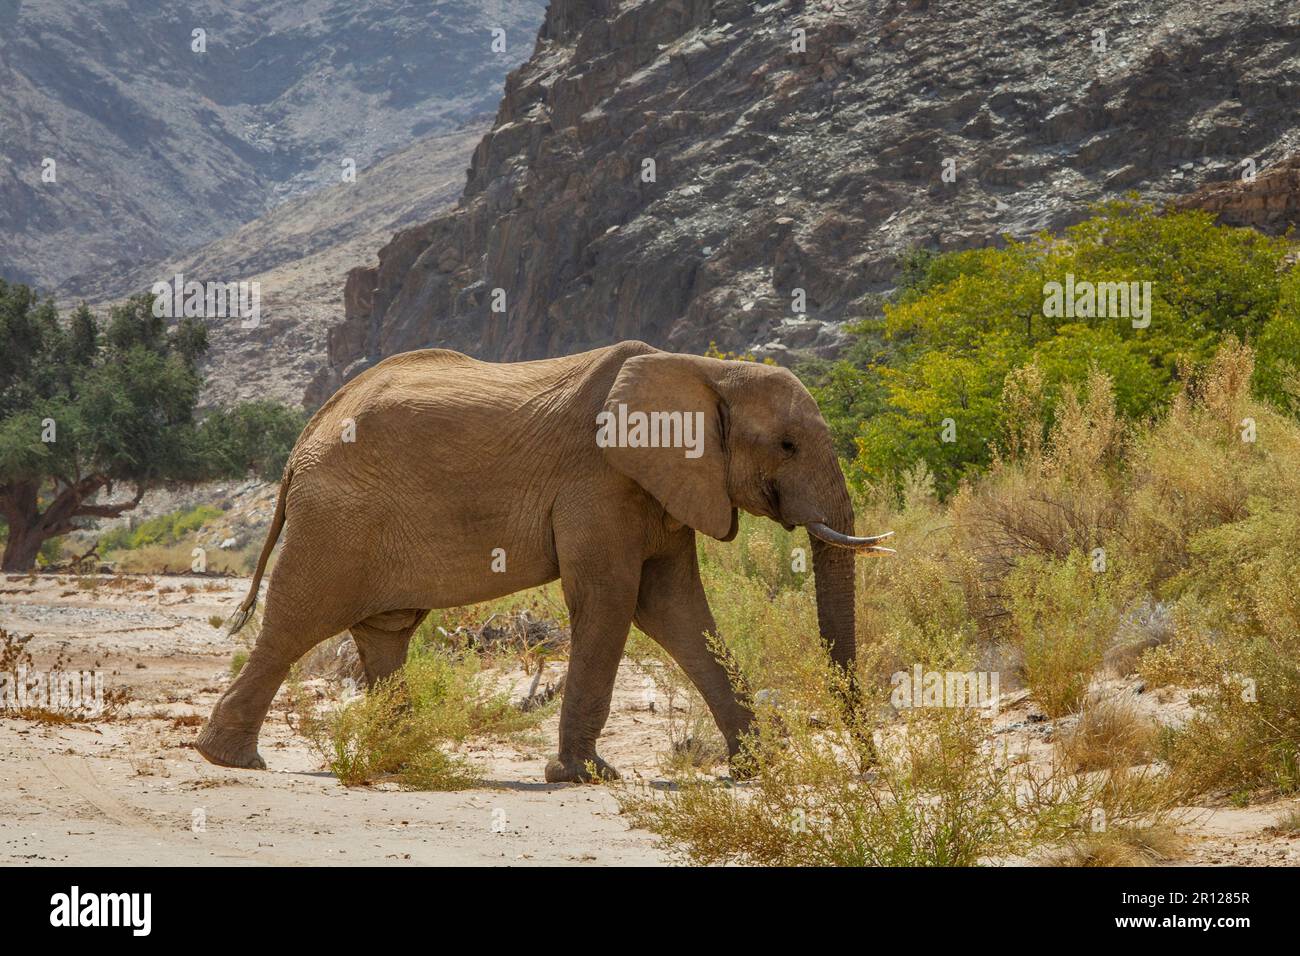 Elefante (Loxodonta africana), camminando attraverso la sabbia profonda nel deserto asciutto letto di fiume. La polvere vola nell'aria. Fiume Hoanib, Damaraland, Namibia, Africa Foto Stock